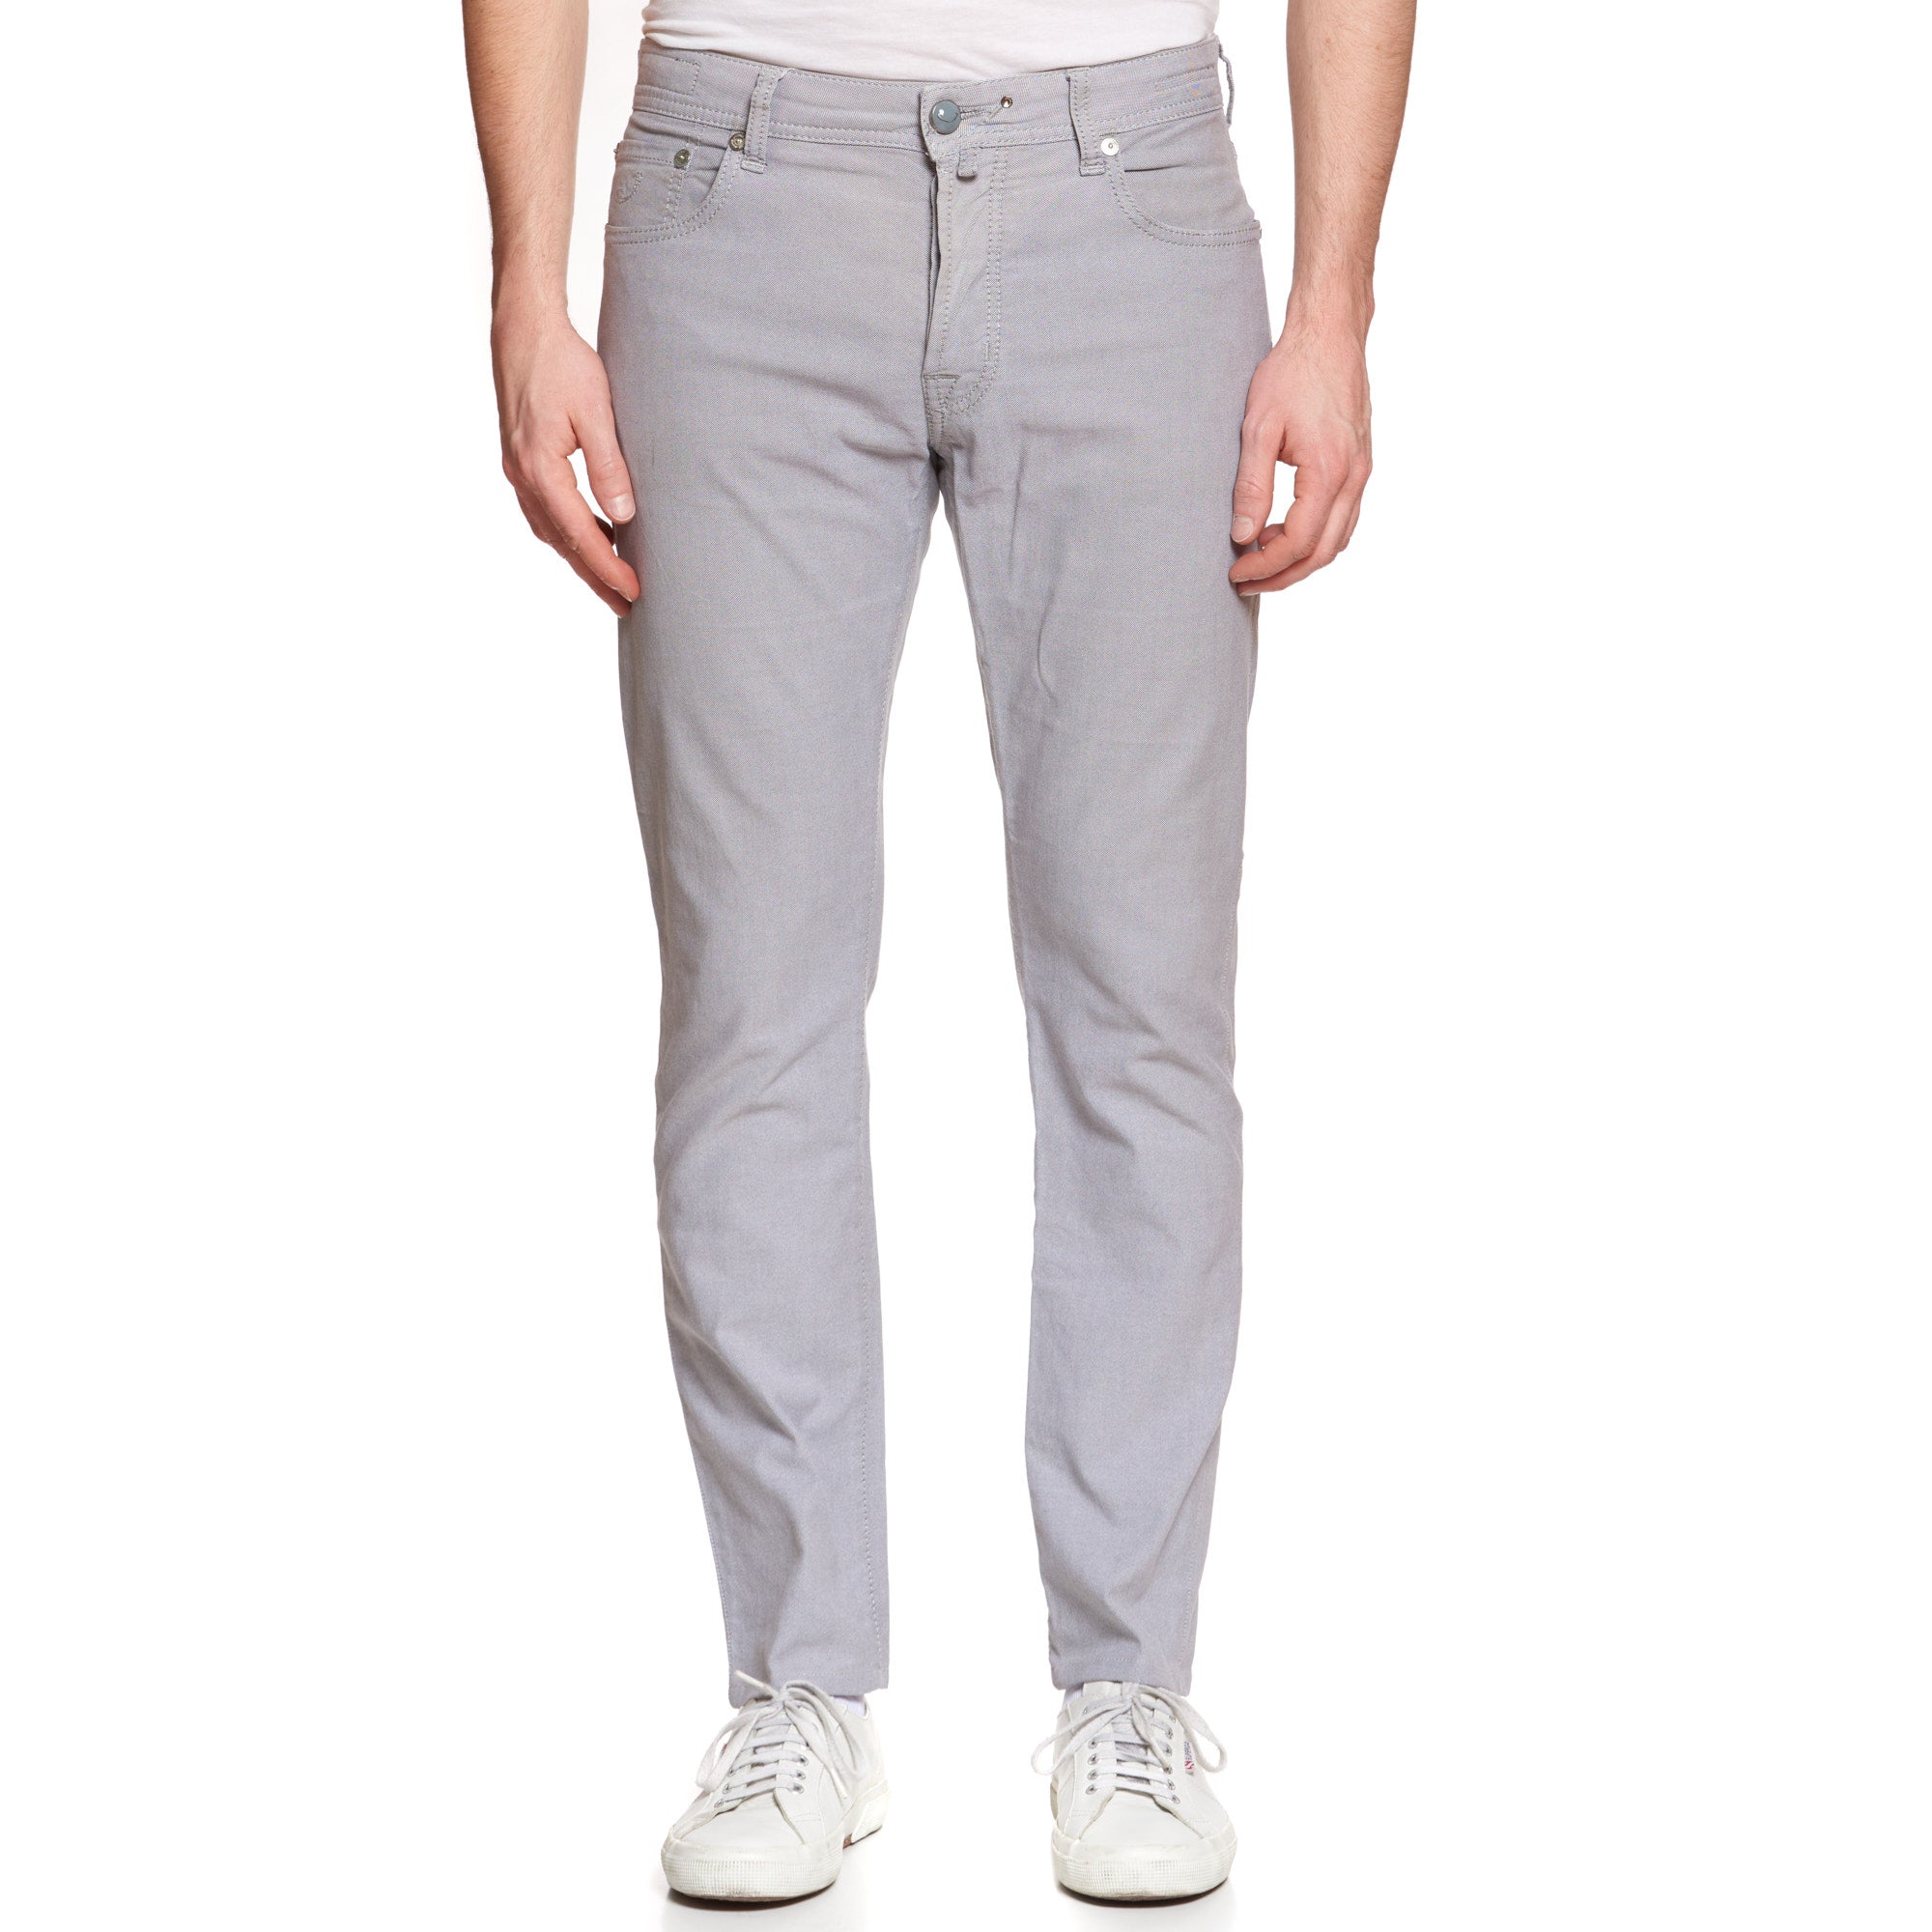 JACOB COHEN J688 Comfort Gray Cotton Stretch Slim Fit Jeans Pants US 33